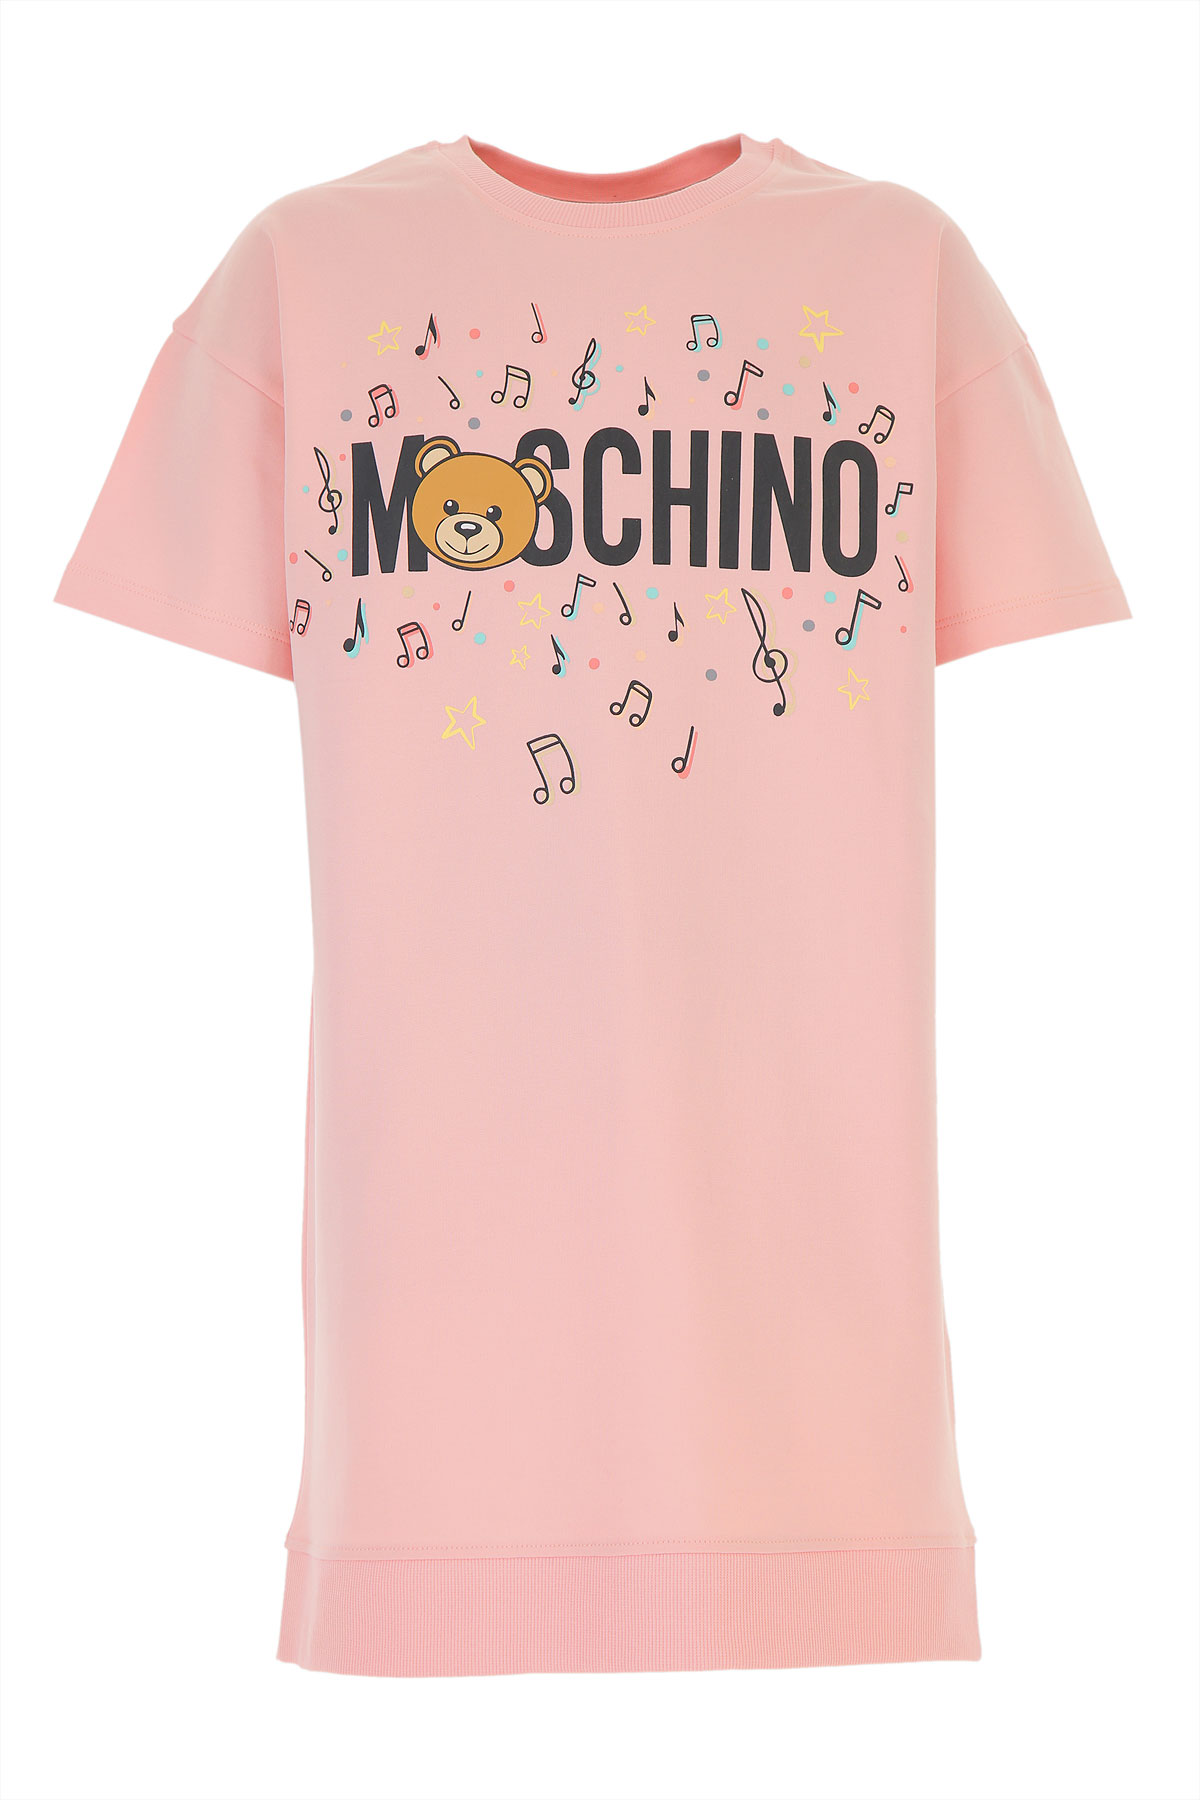 Moschino Kleid für Mädchen Günstig im Sale, Baumwolle, 2017, 10Y 12Y 14Y 4Y 5Y 6Y 8Y